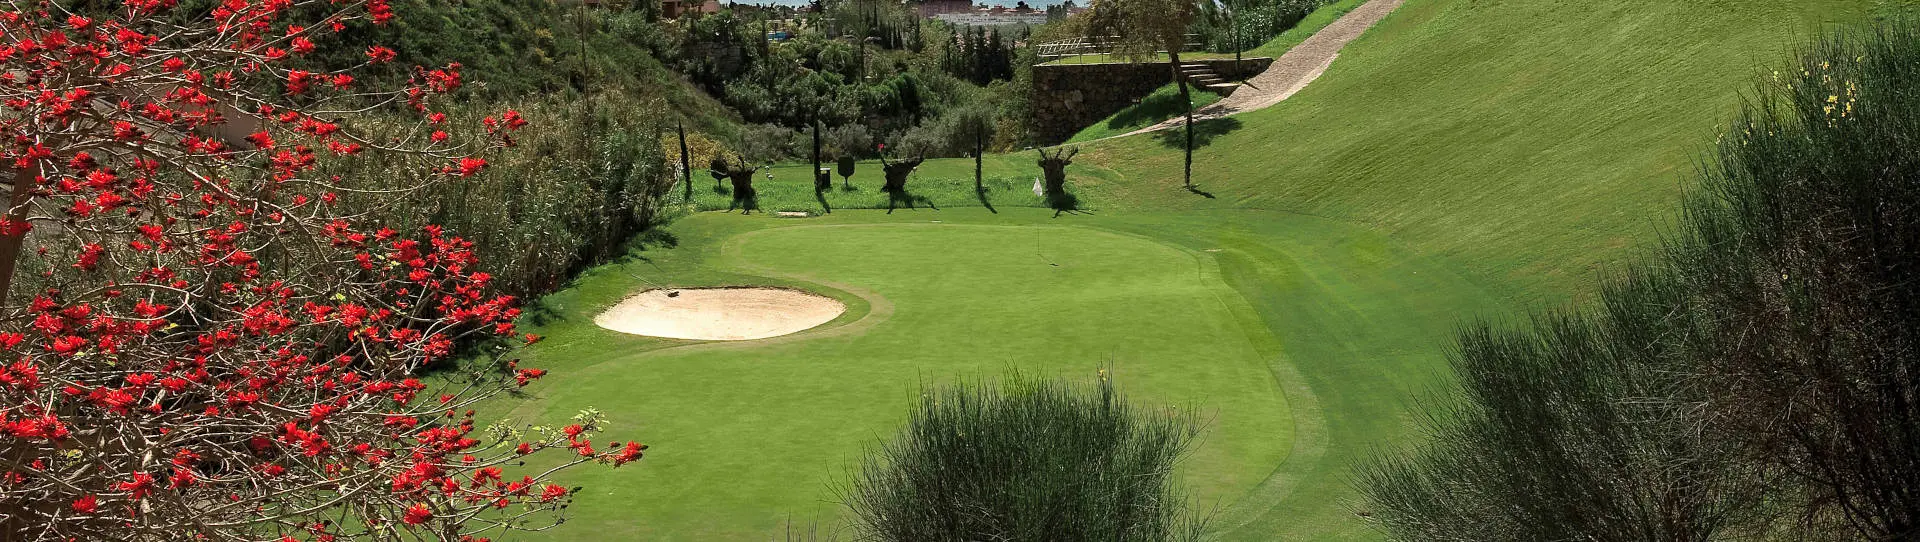 Spain golf courses - Tramores Golf at Villa Padierna - Photo 2